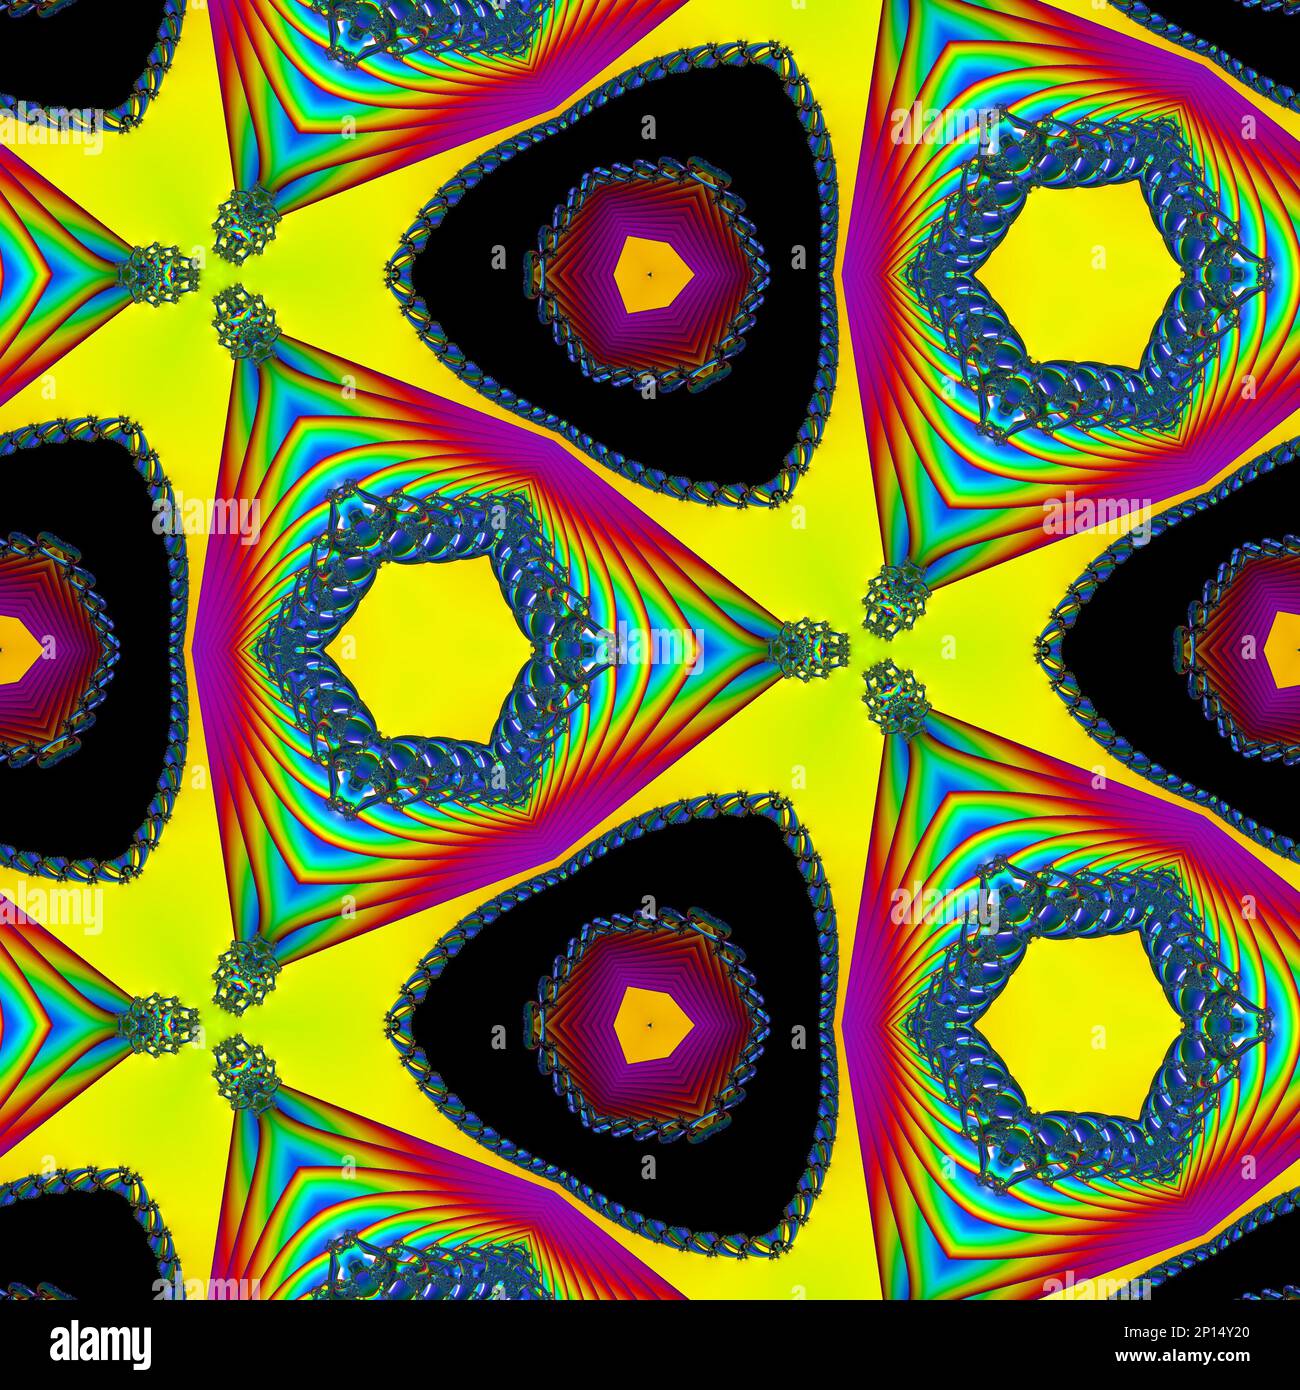 Abstrakter fraktaler Hintergrund. Regenbogen, leuchtende Perlmutttapete.  Digitale Geometriedekoration. Explosion von Farbenergie. Dekorative und  magische Esoterie Stockfotografie - Alamy